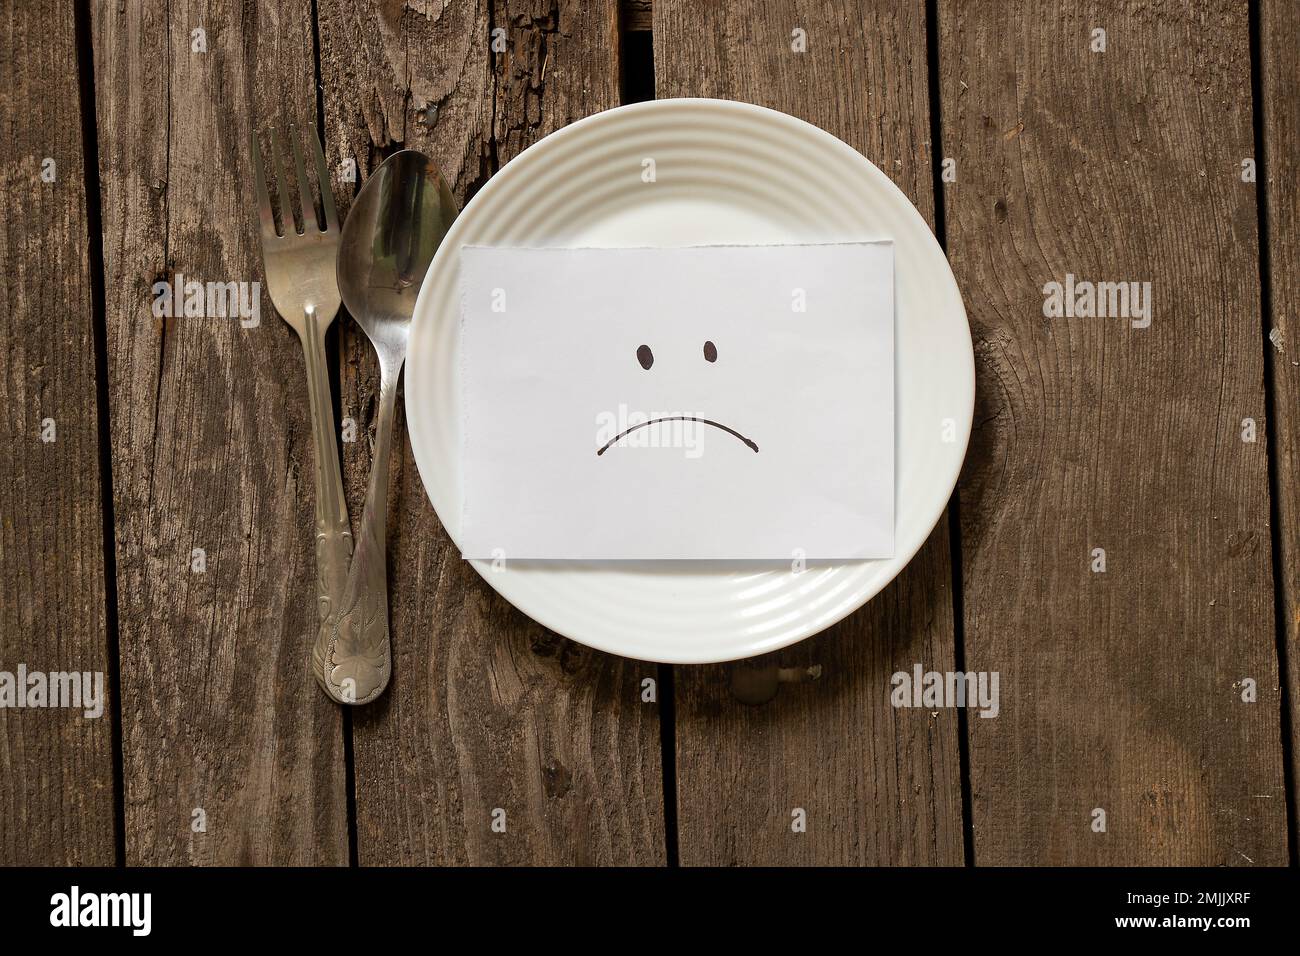 assiette vide avec un smiley triste sur papier et une fourchette avec une cuillère sur une table en bois, rien à manger Banque D'Images